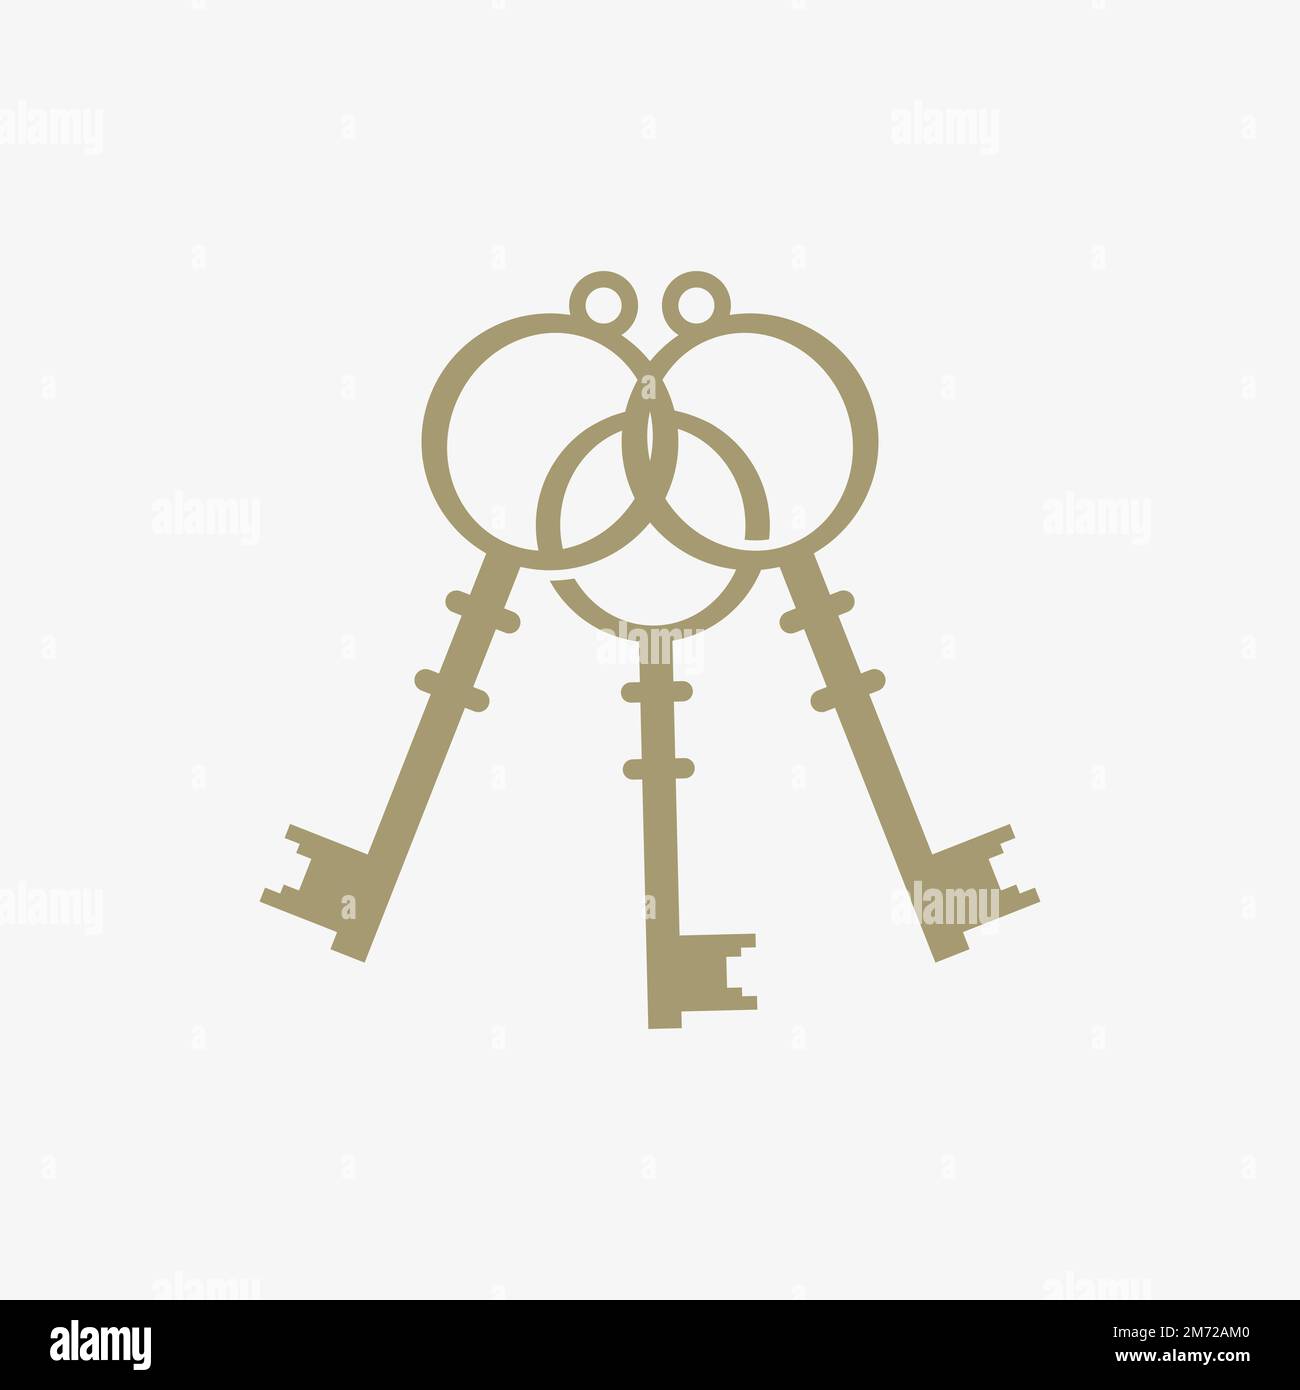 Medieval vintage lock inspiration design vector illustration, three interlocking locks. Stock Vector